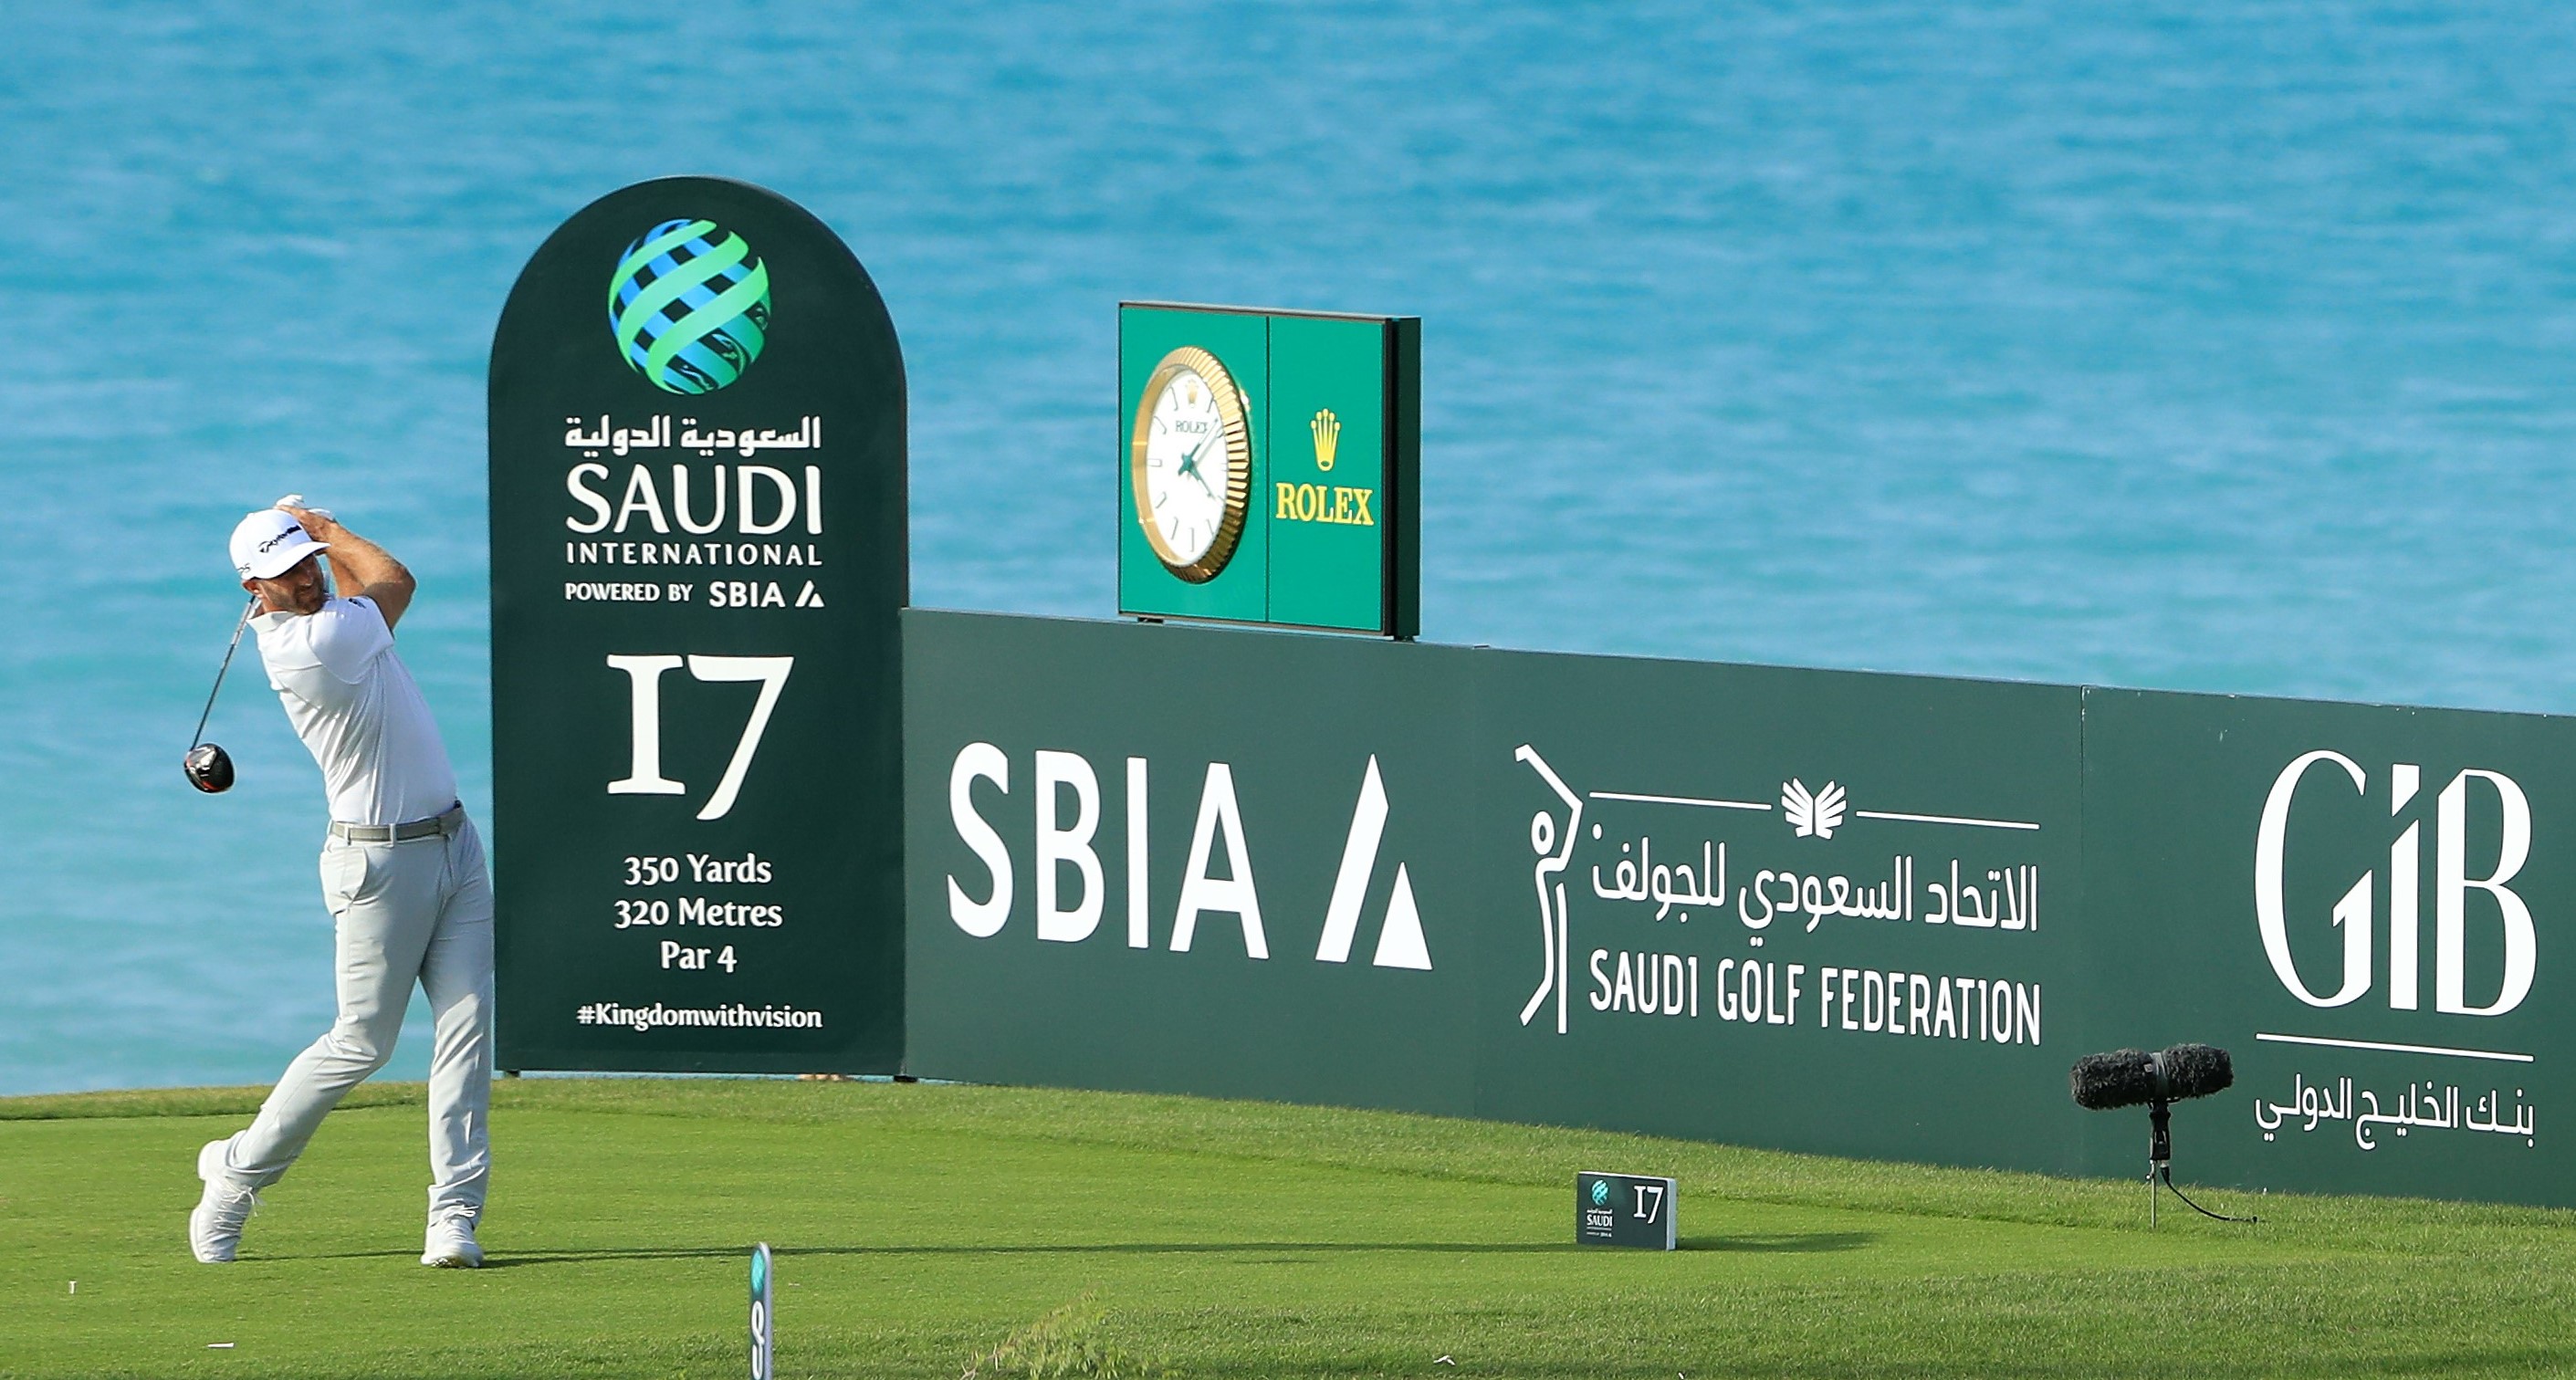 Players on Saudi golf series face disciplinary action PGA